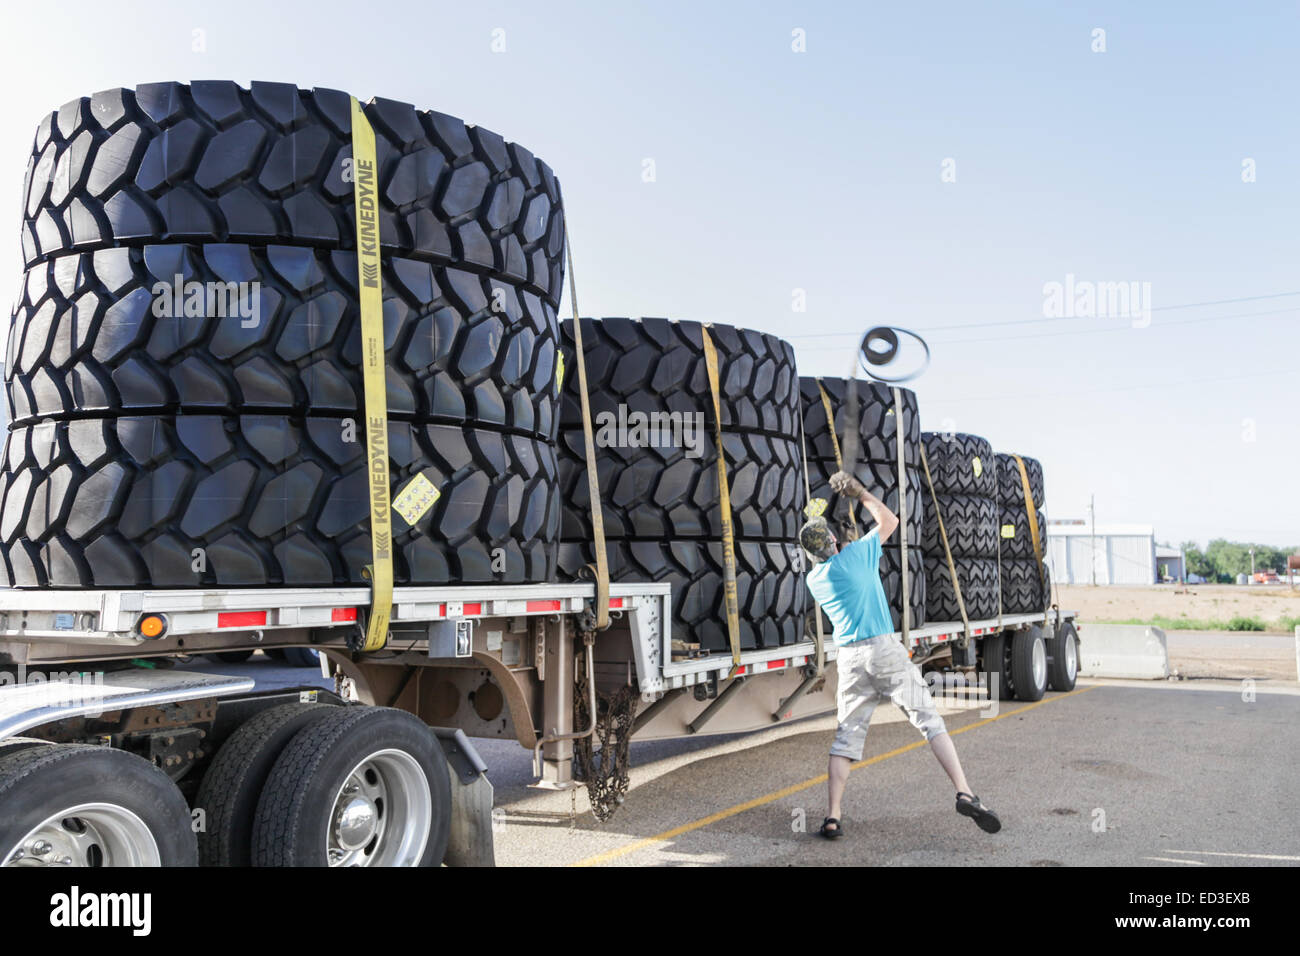 Peterbilt carrello con carico di grandi dimensioni pneumatici di data mining su rimorchio flatdeck driver e gettando le cinghie oltre il carico per fissarlo. Foto Stock